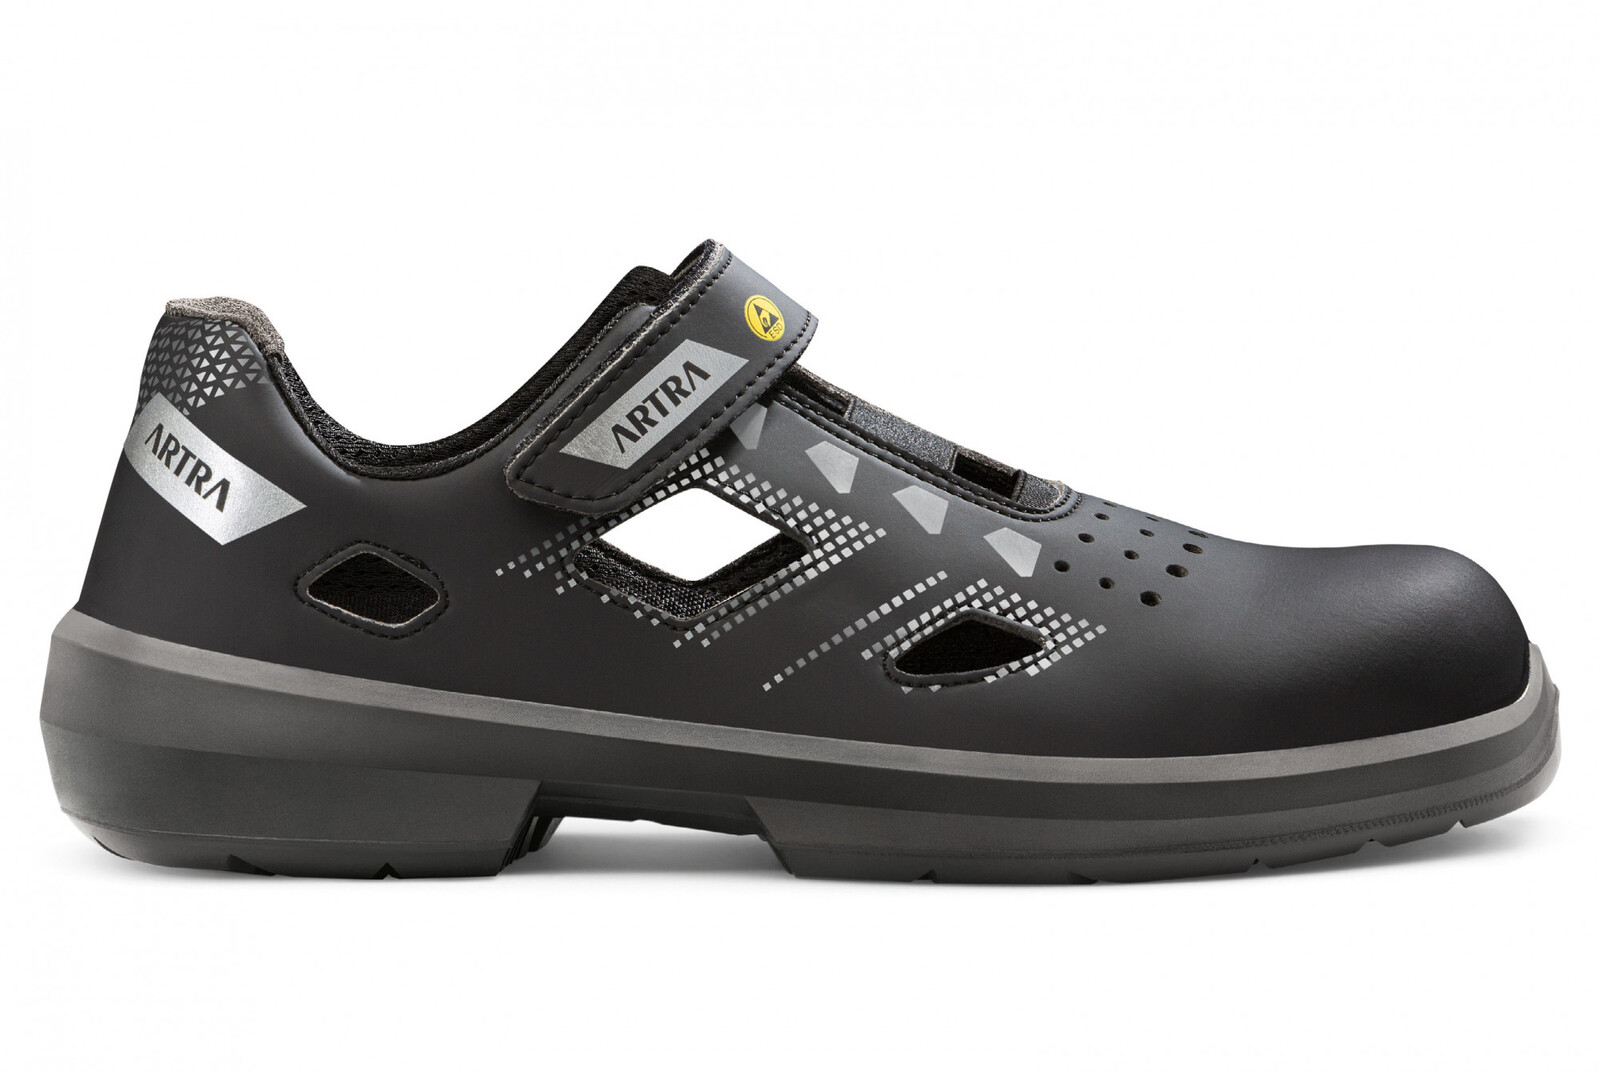 Bezpečnostné sandále Artra Arzo 805 676560 S1 SRC ESD MF - veľkosť: 41, farba: čierna/sivá